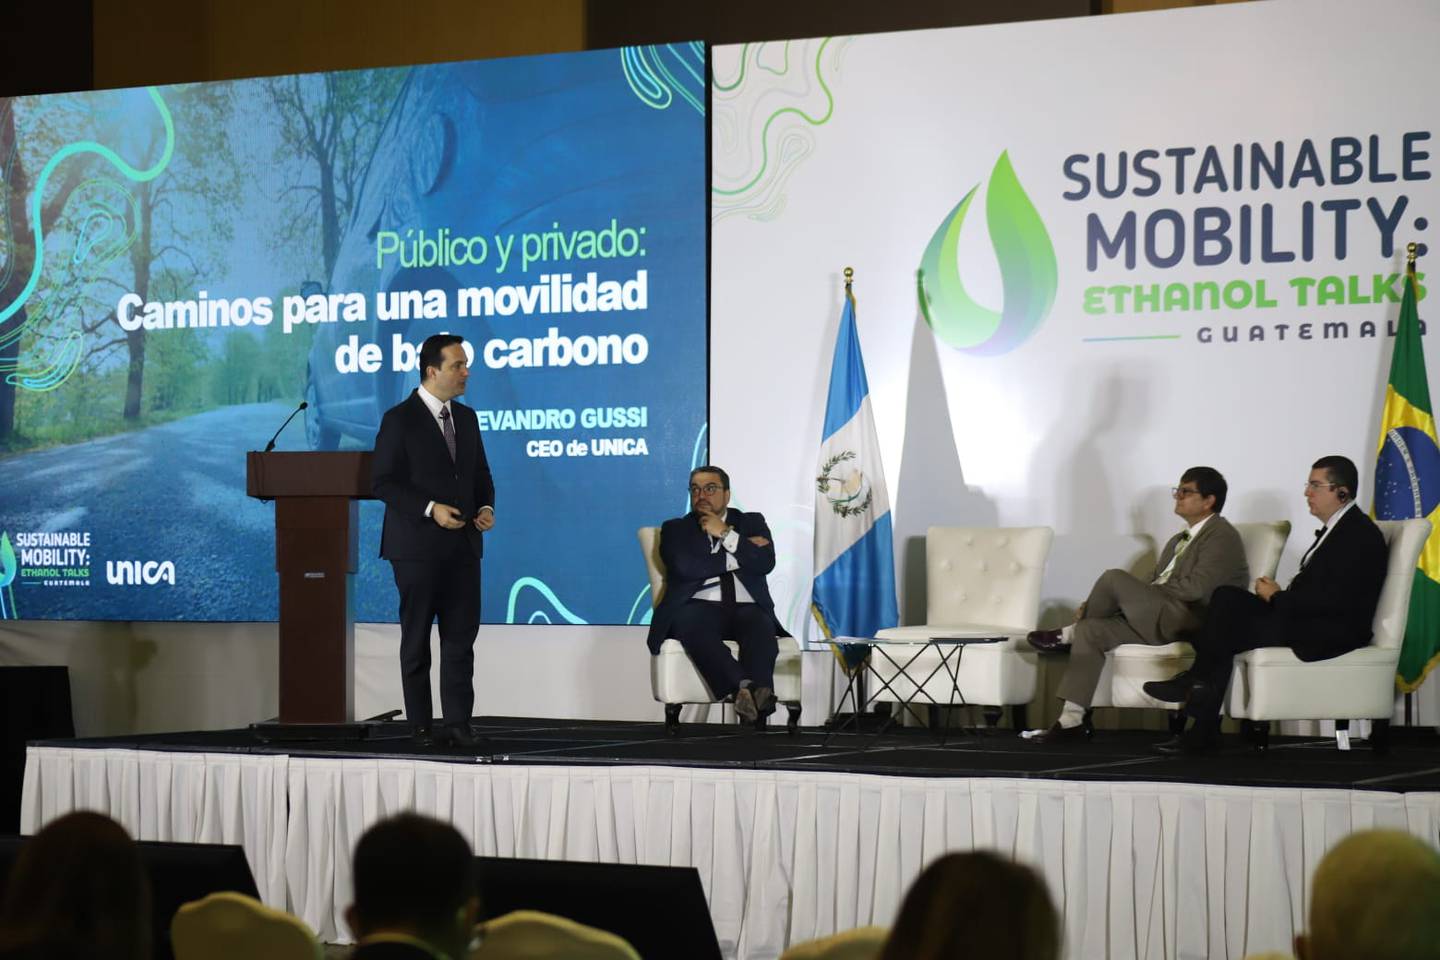 se llevó a cabo en la Ciudad de Guatemala donde se abordó el tema del uso del etanol, entre otros temas de movilidad sostenible.